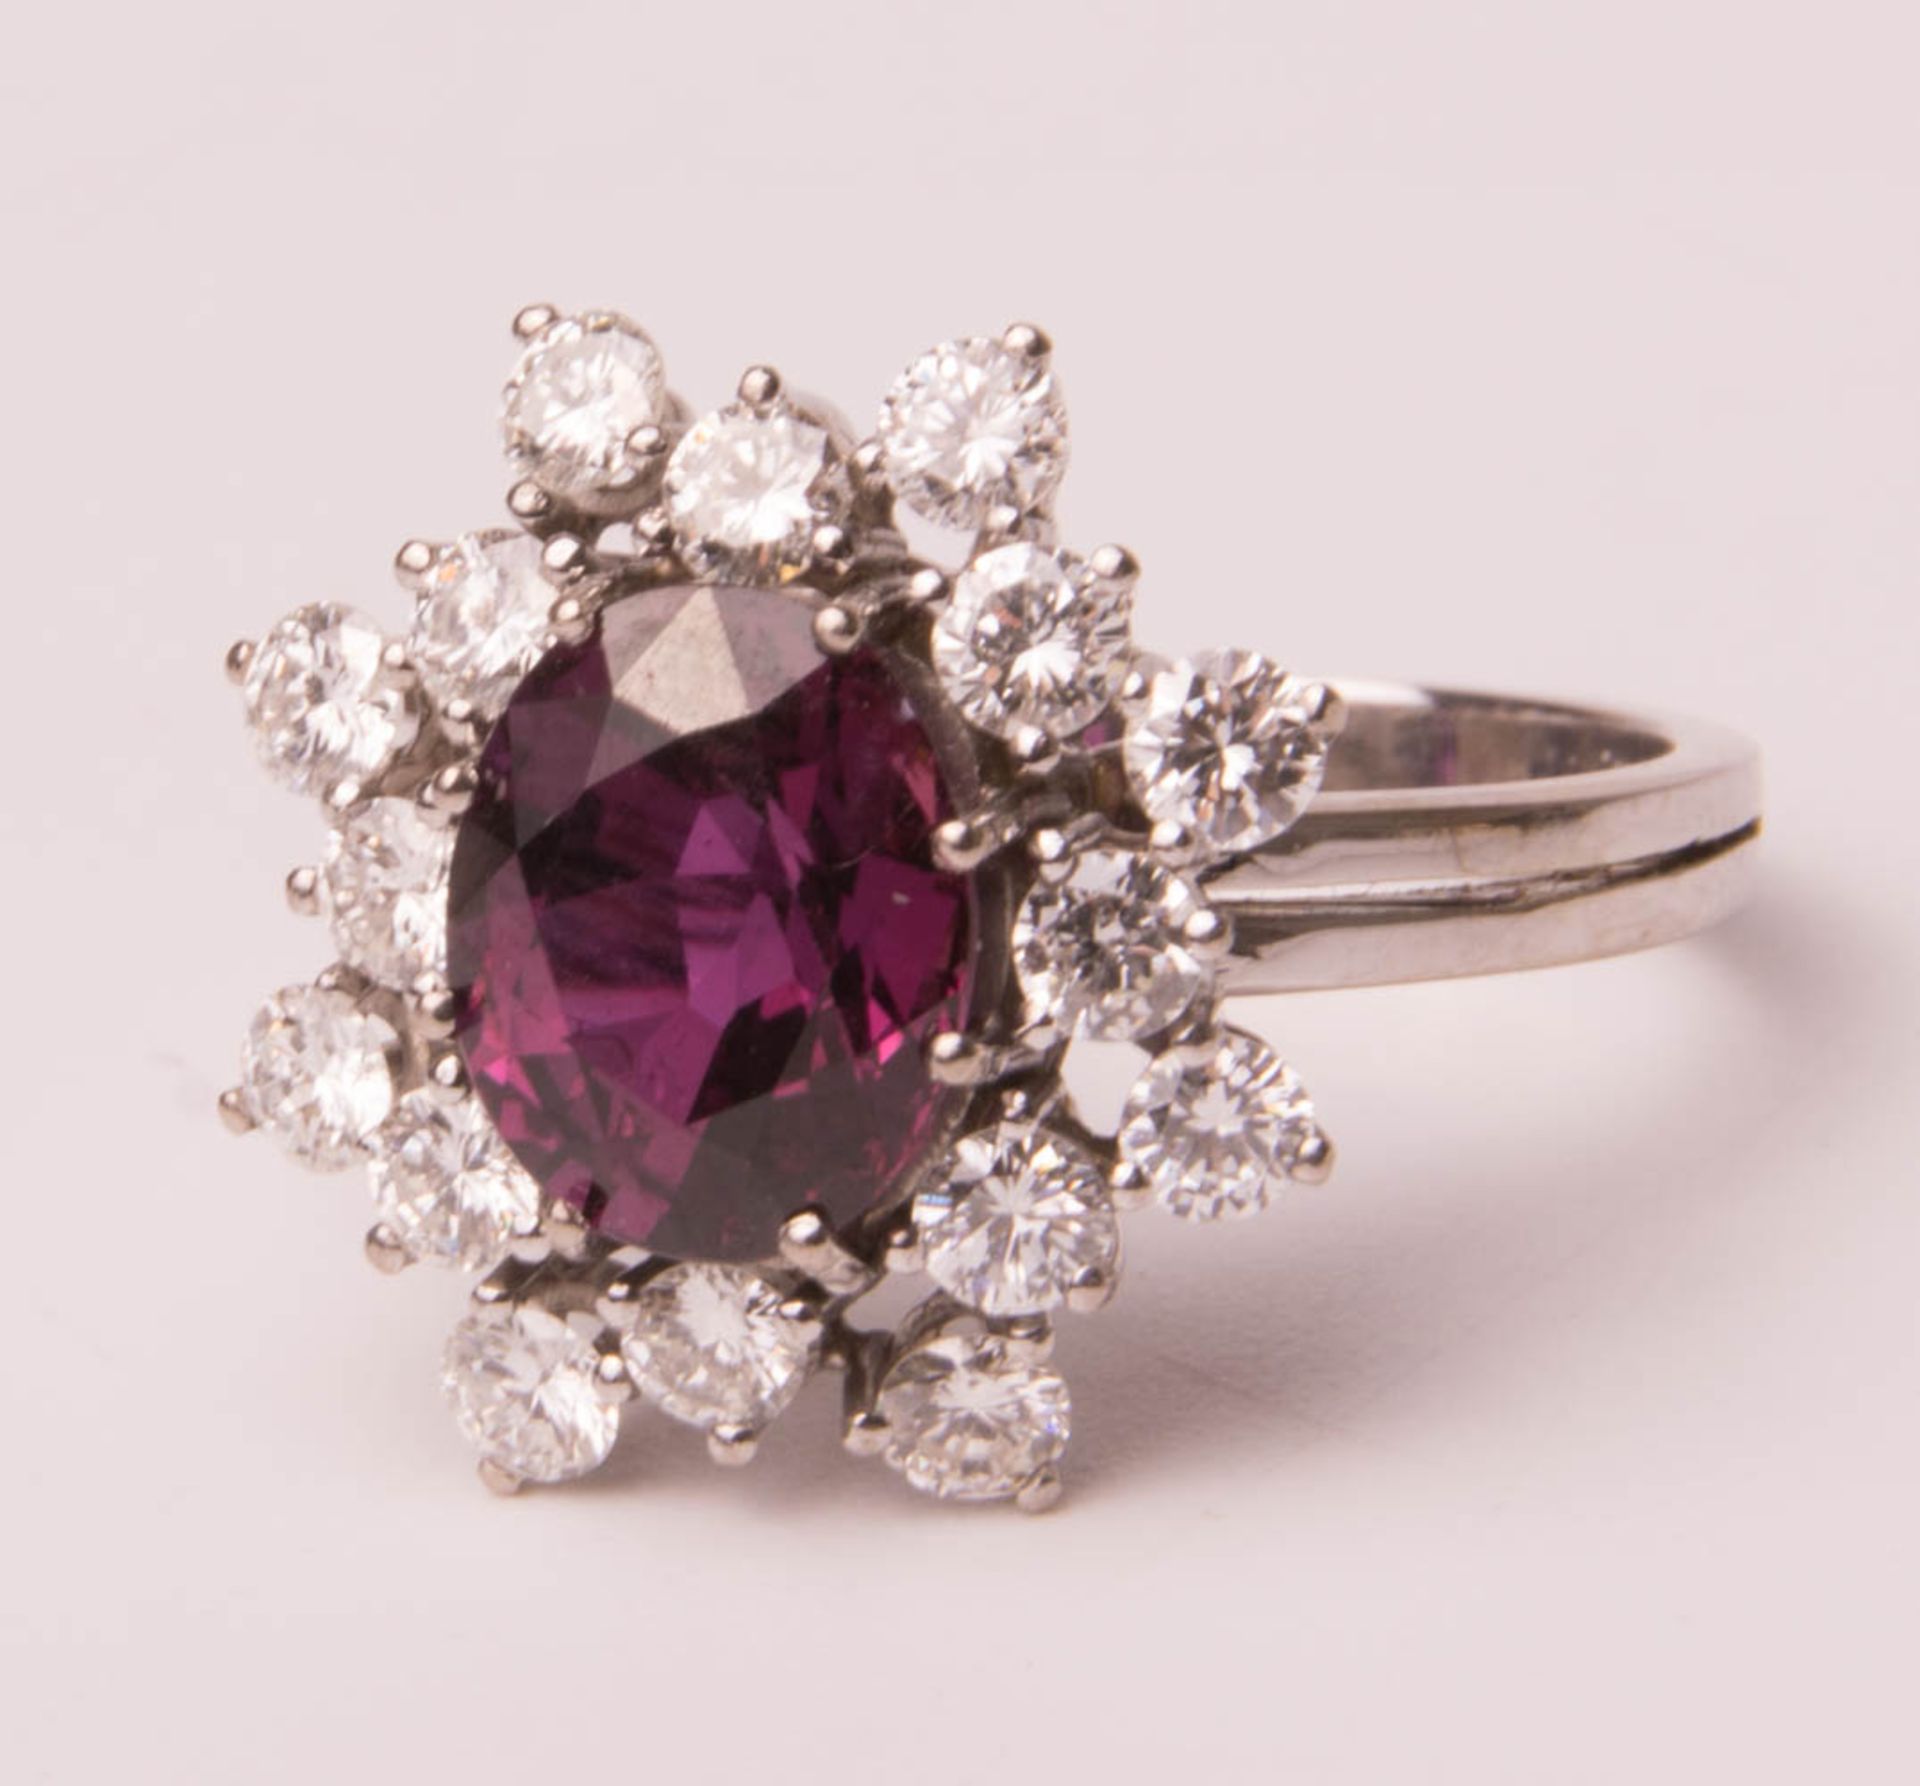 Wunderschöner Ring mit Amethyst und Diamanten, 750er Weißgold. - Bild 3 aus 7